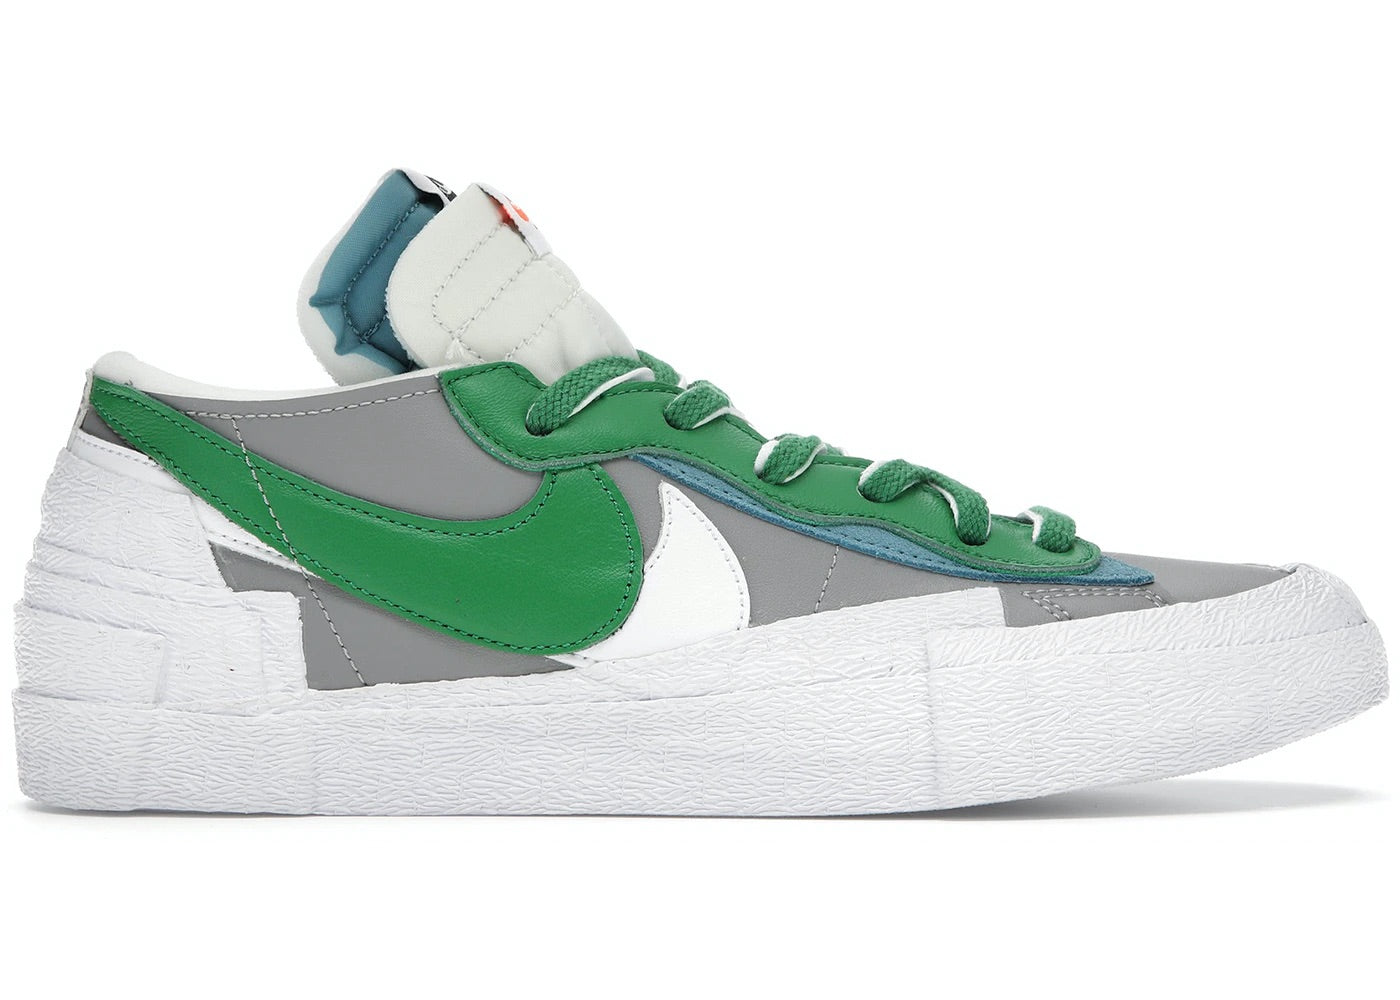 Nike Sacai Blazer Low "Classic Green"